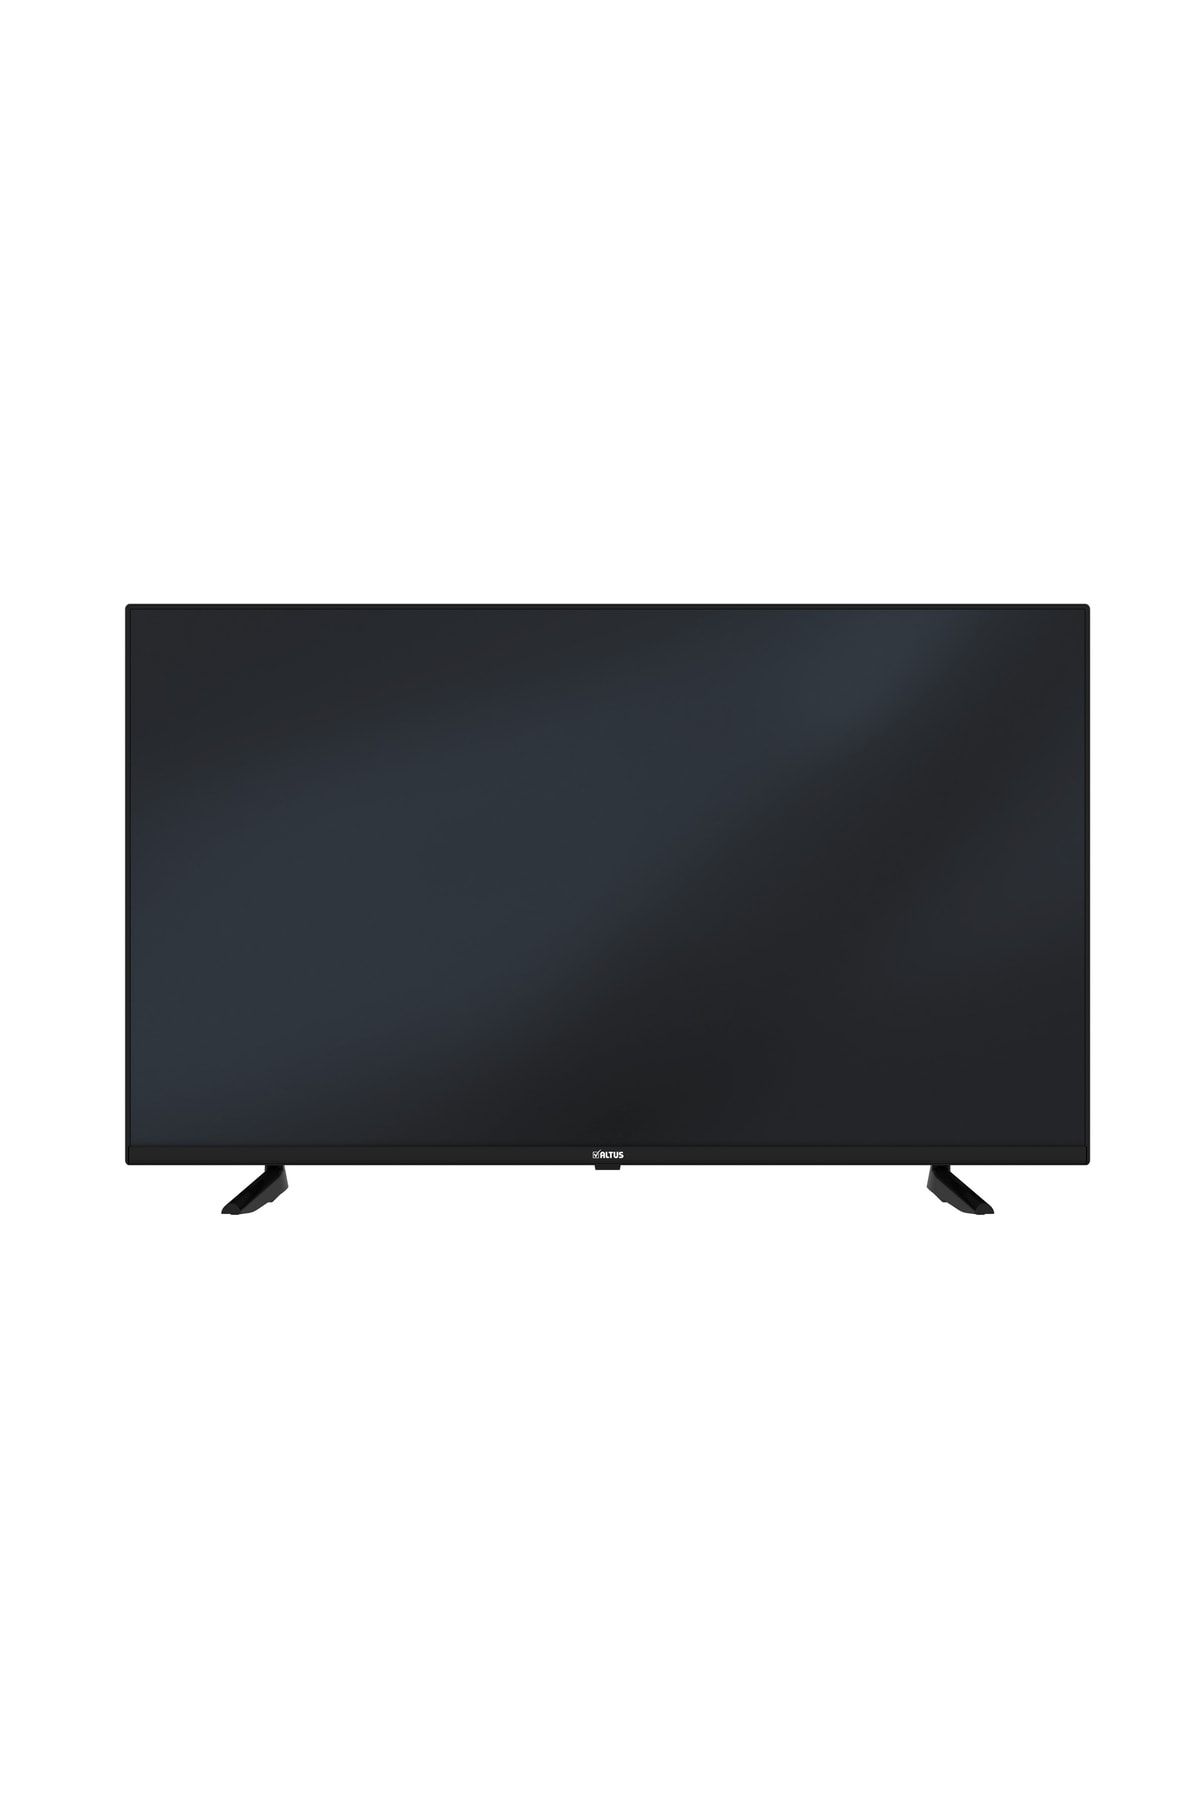 Altus Al43 Uhd 7523 4k Ultra Hd Android Smart Tv